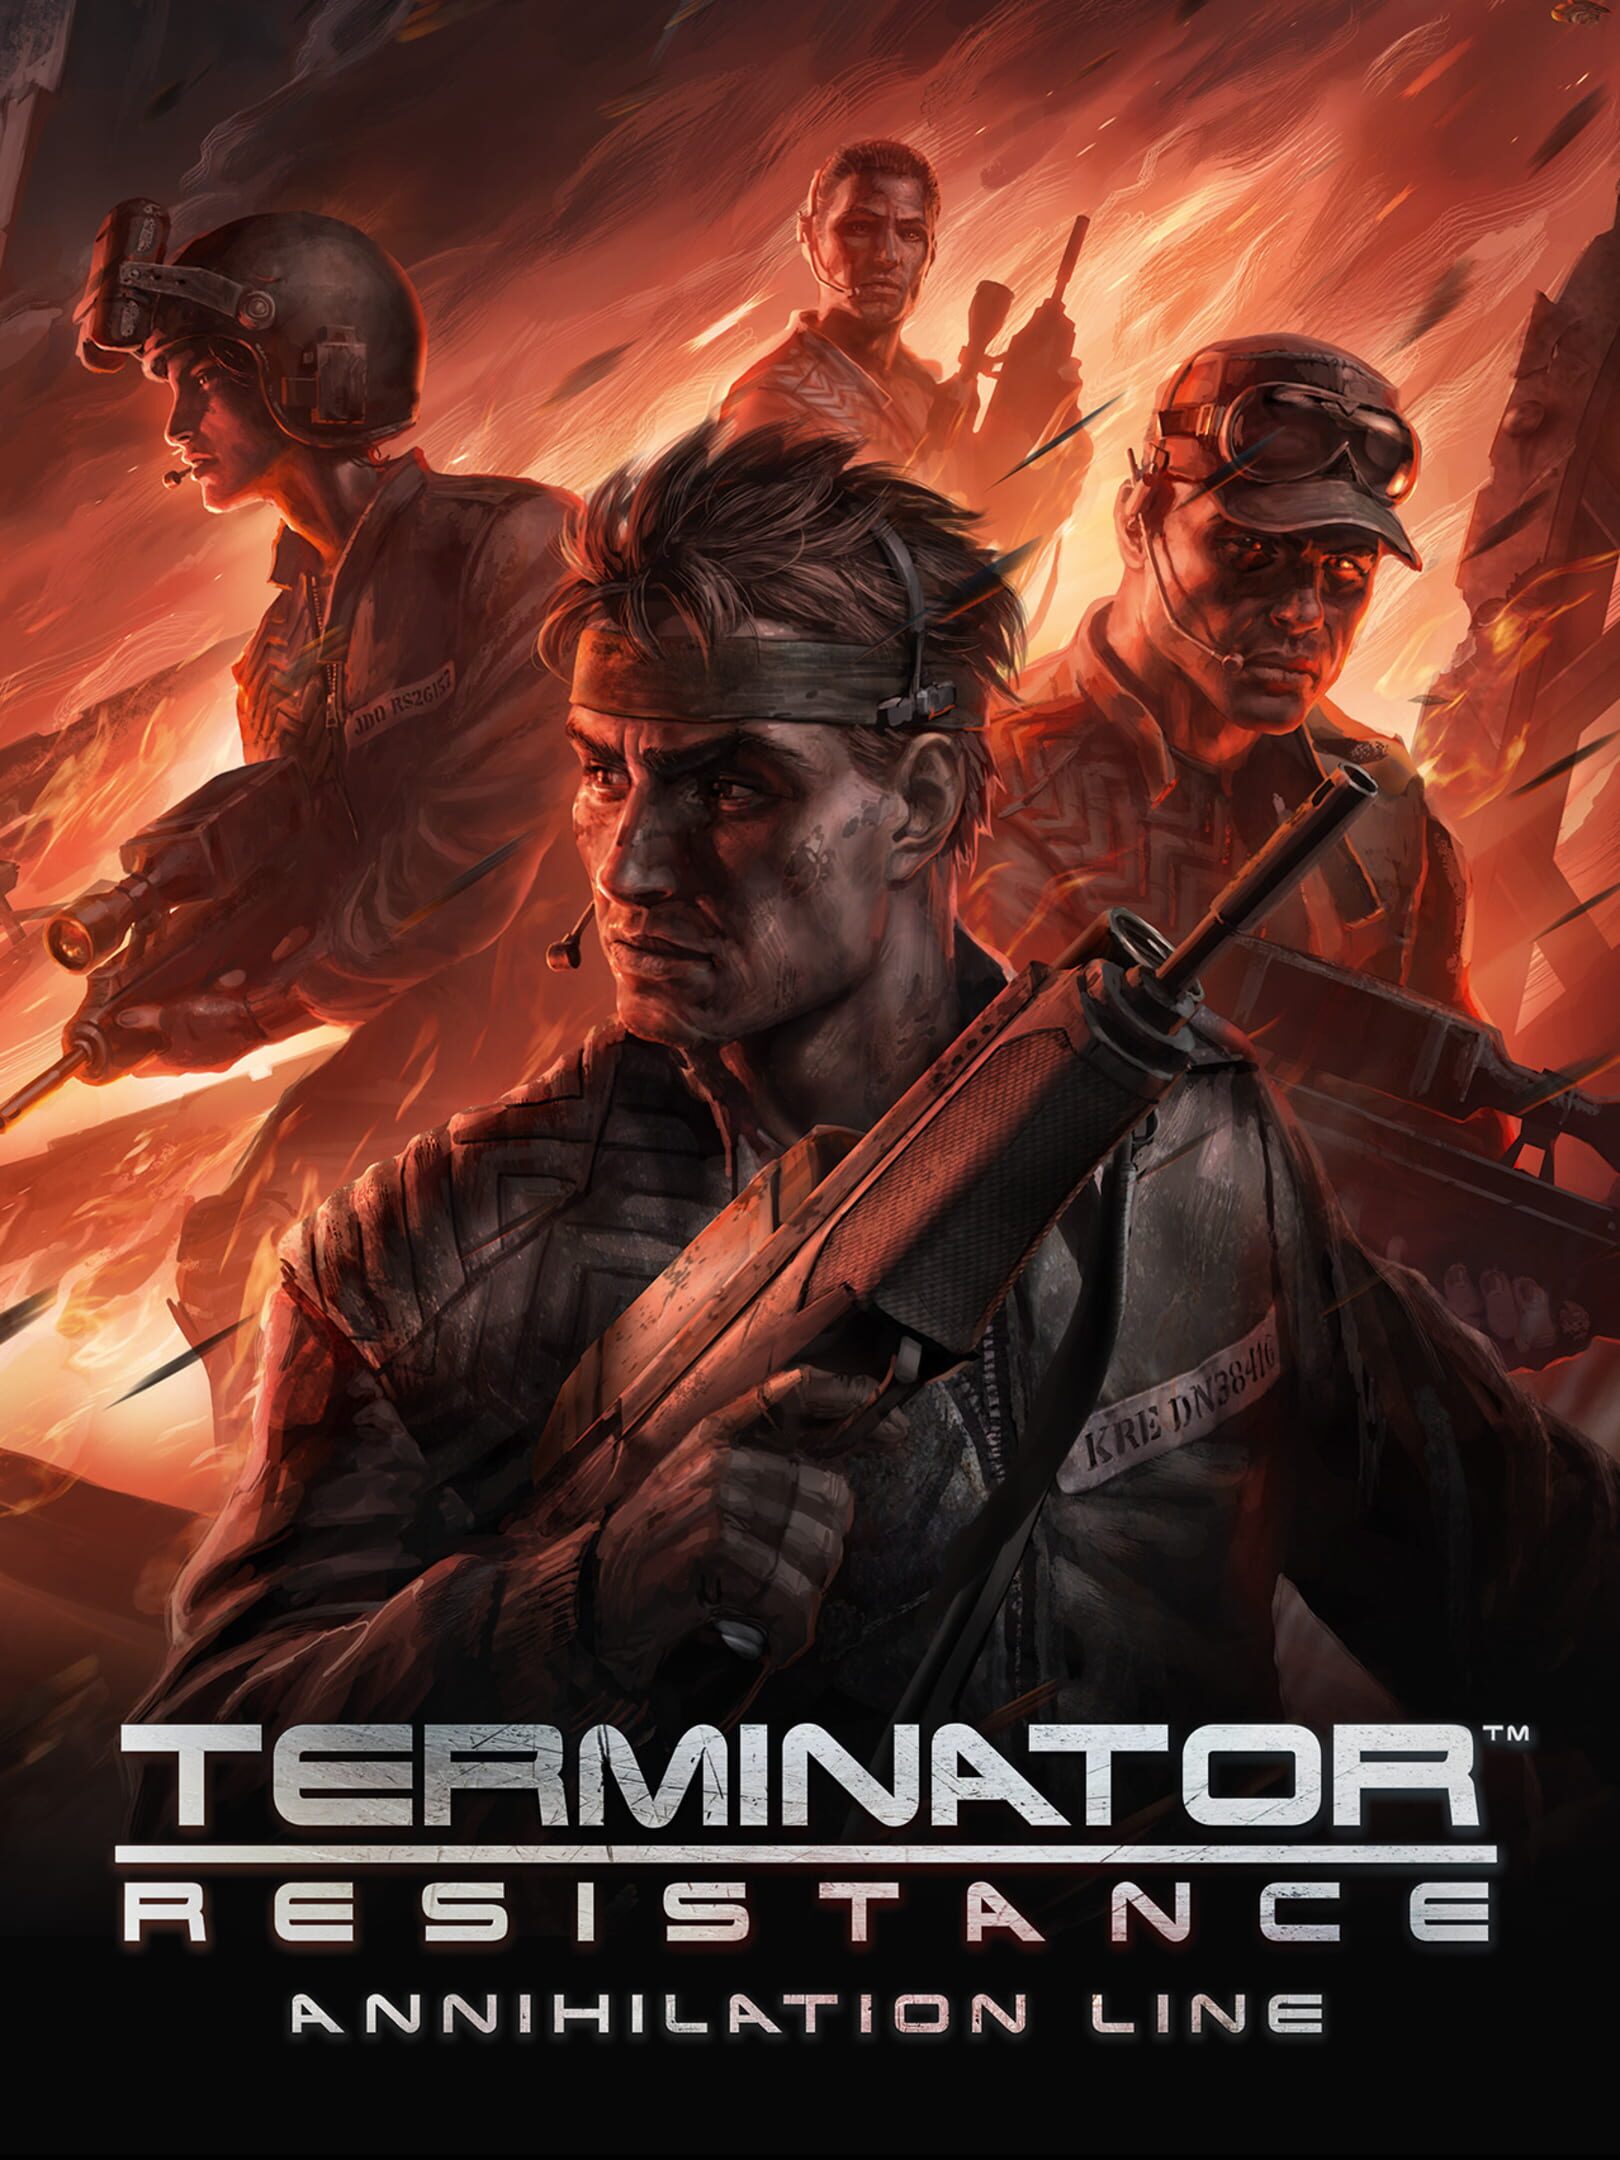 Terminator resistance annihilation